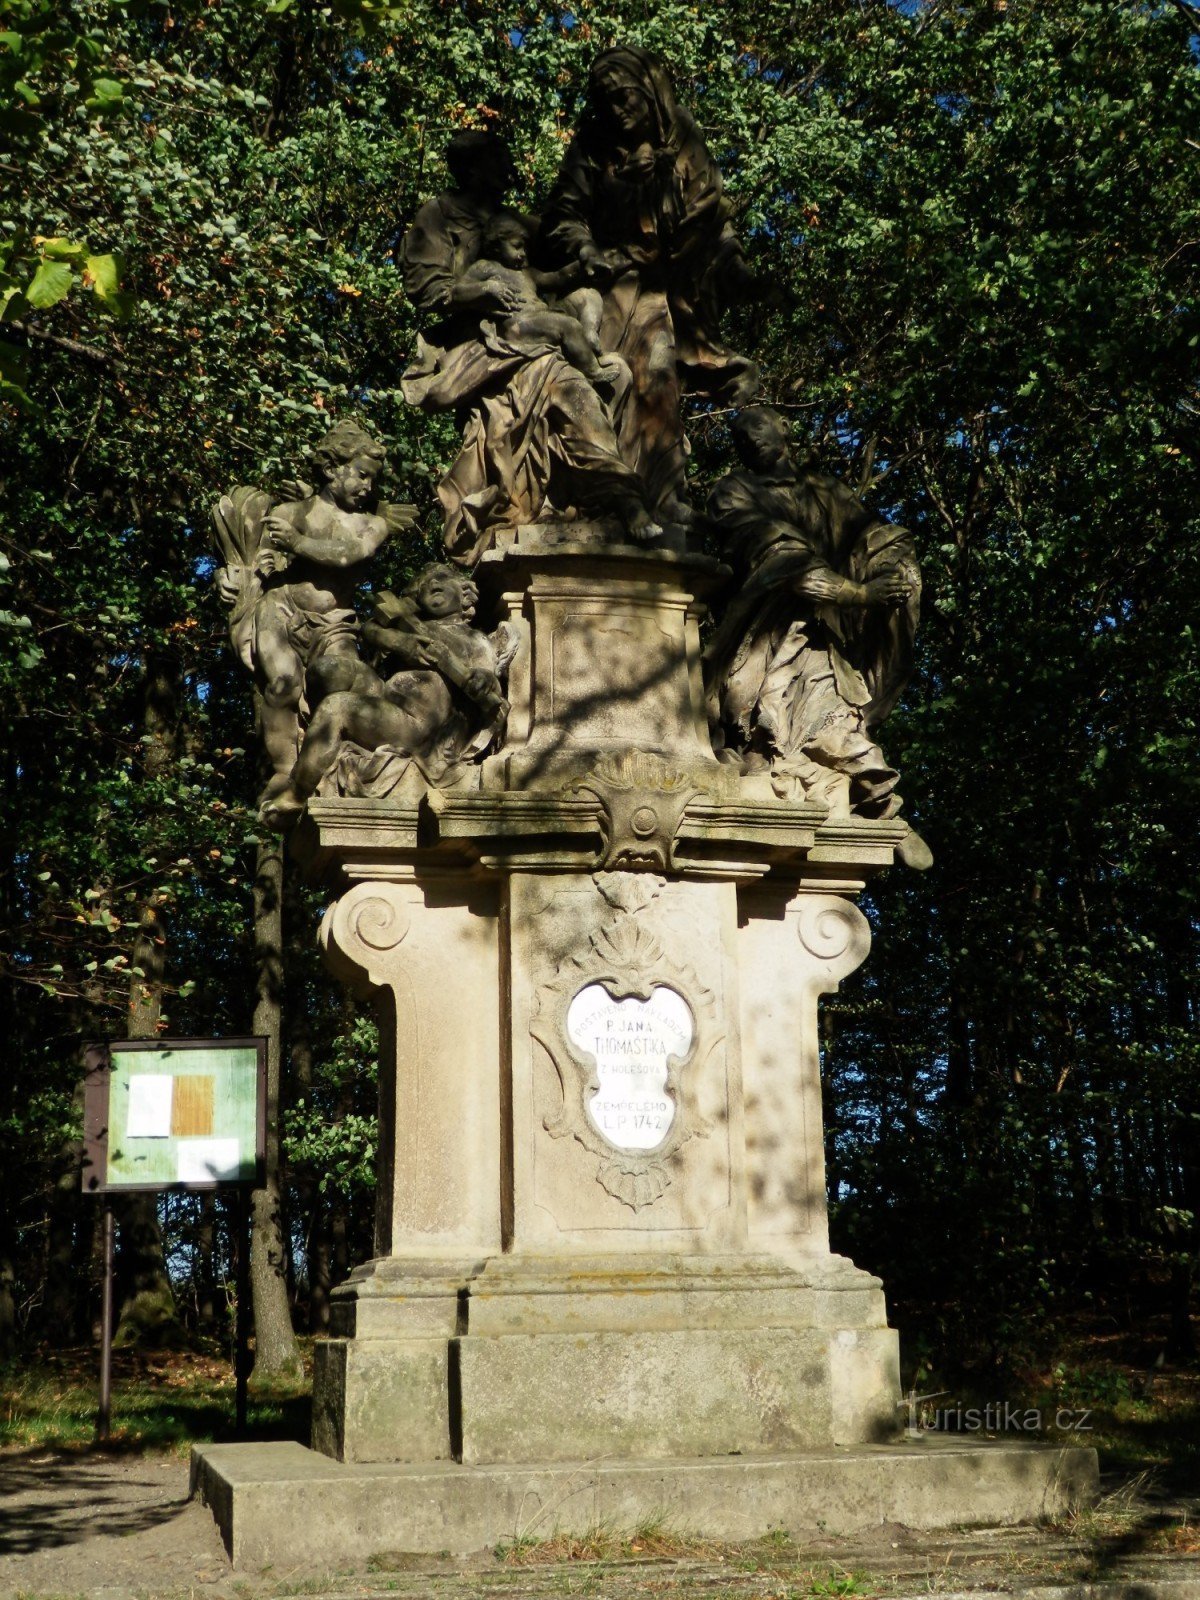 Άγαλμα του Αγ. Η Άννα στον Γιάνκοβιτς